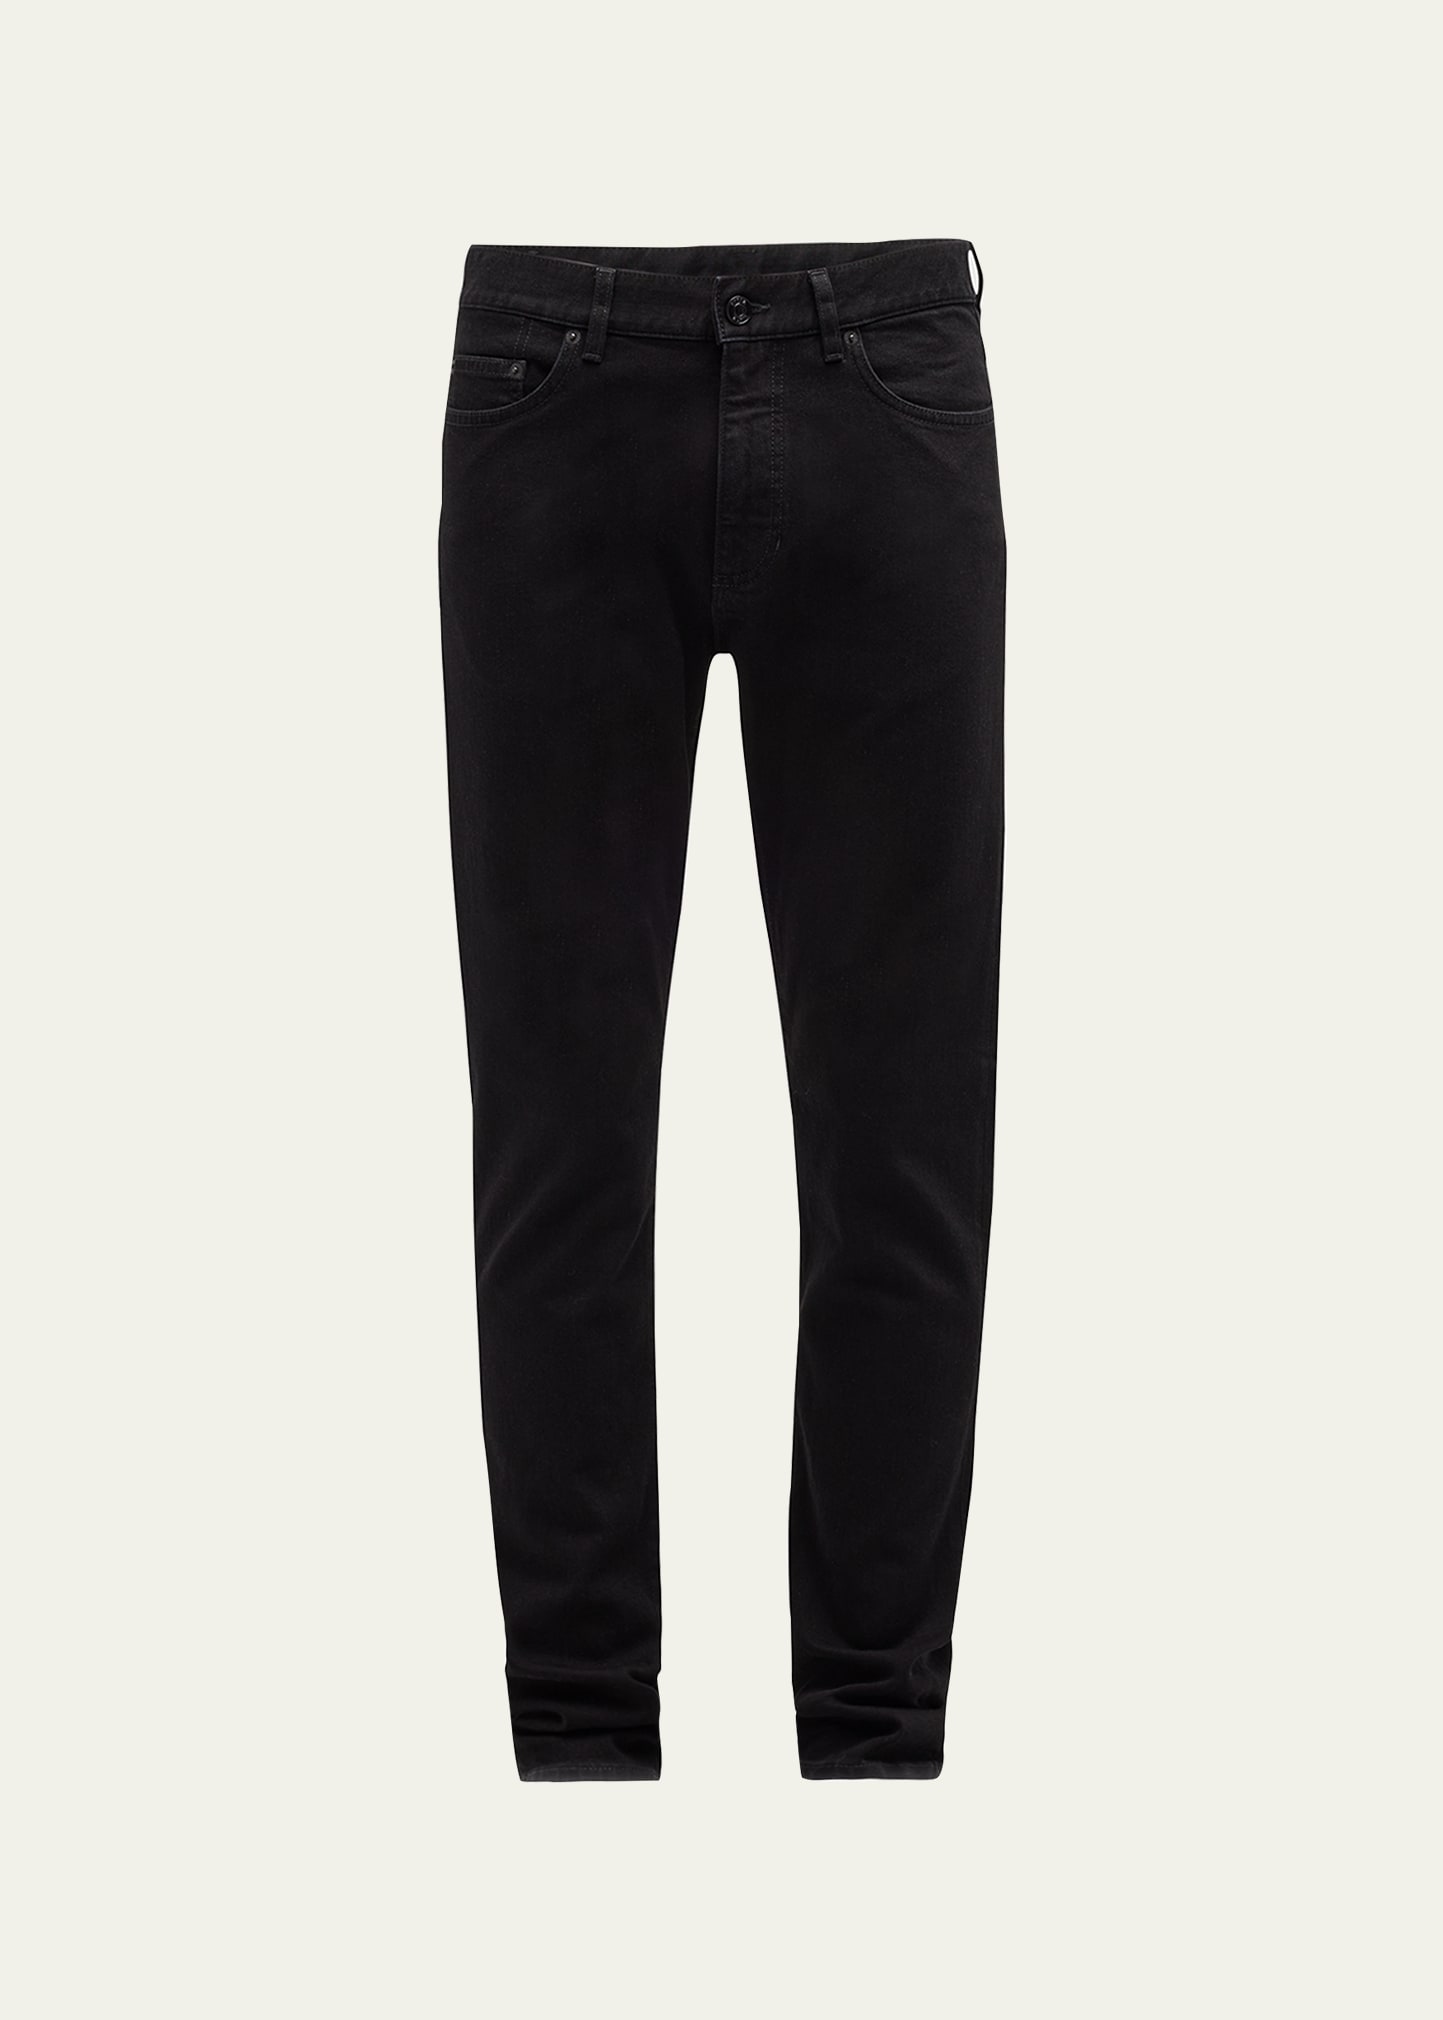 Zegna Men's 5-pocket Black Wash Denim Jeans In Black Solid